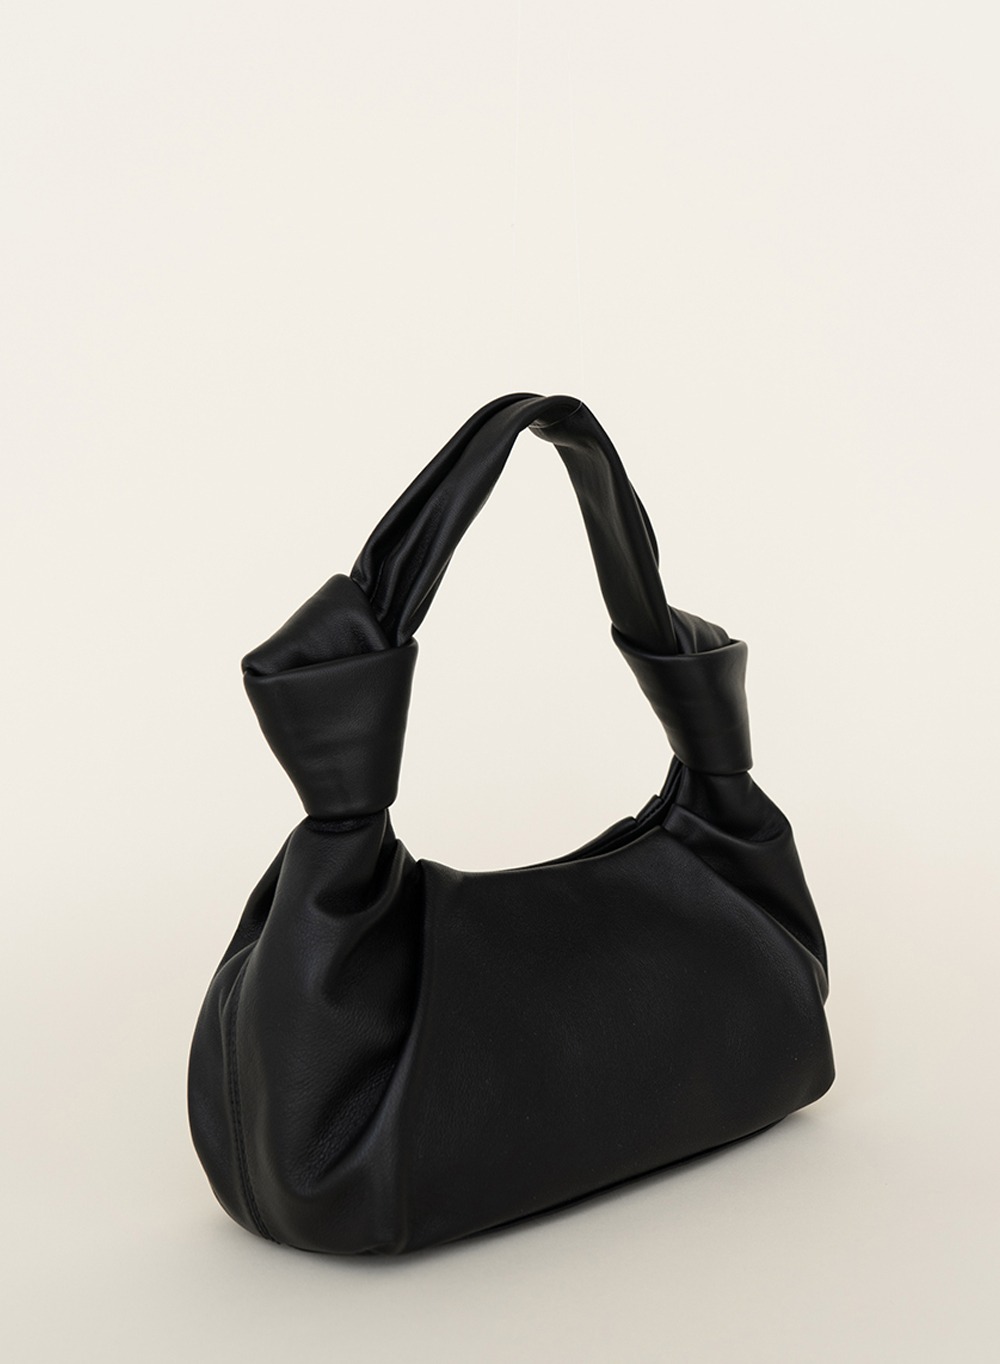 FW21 Soft Knot Bag Black